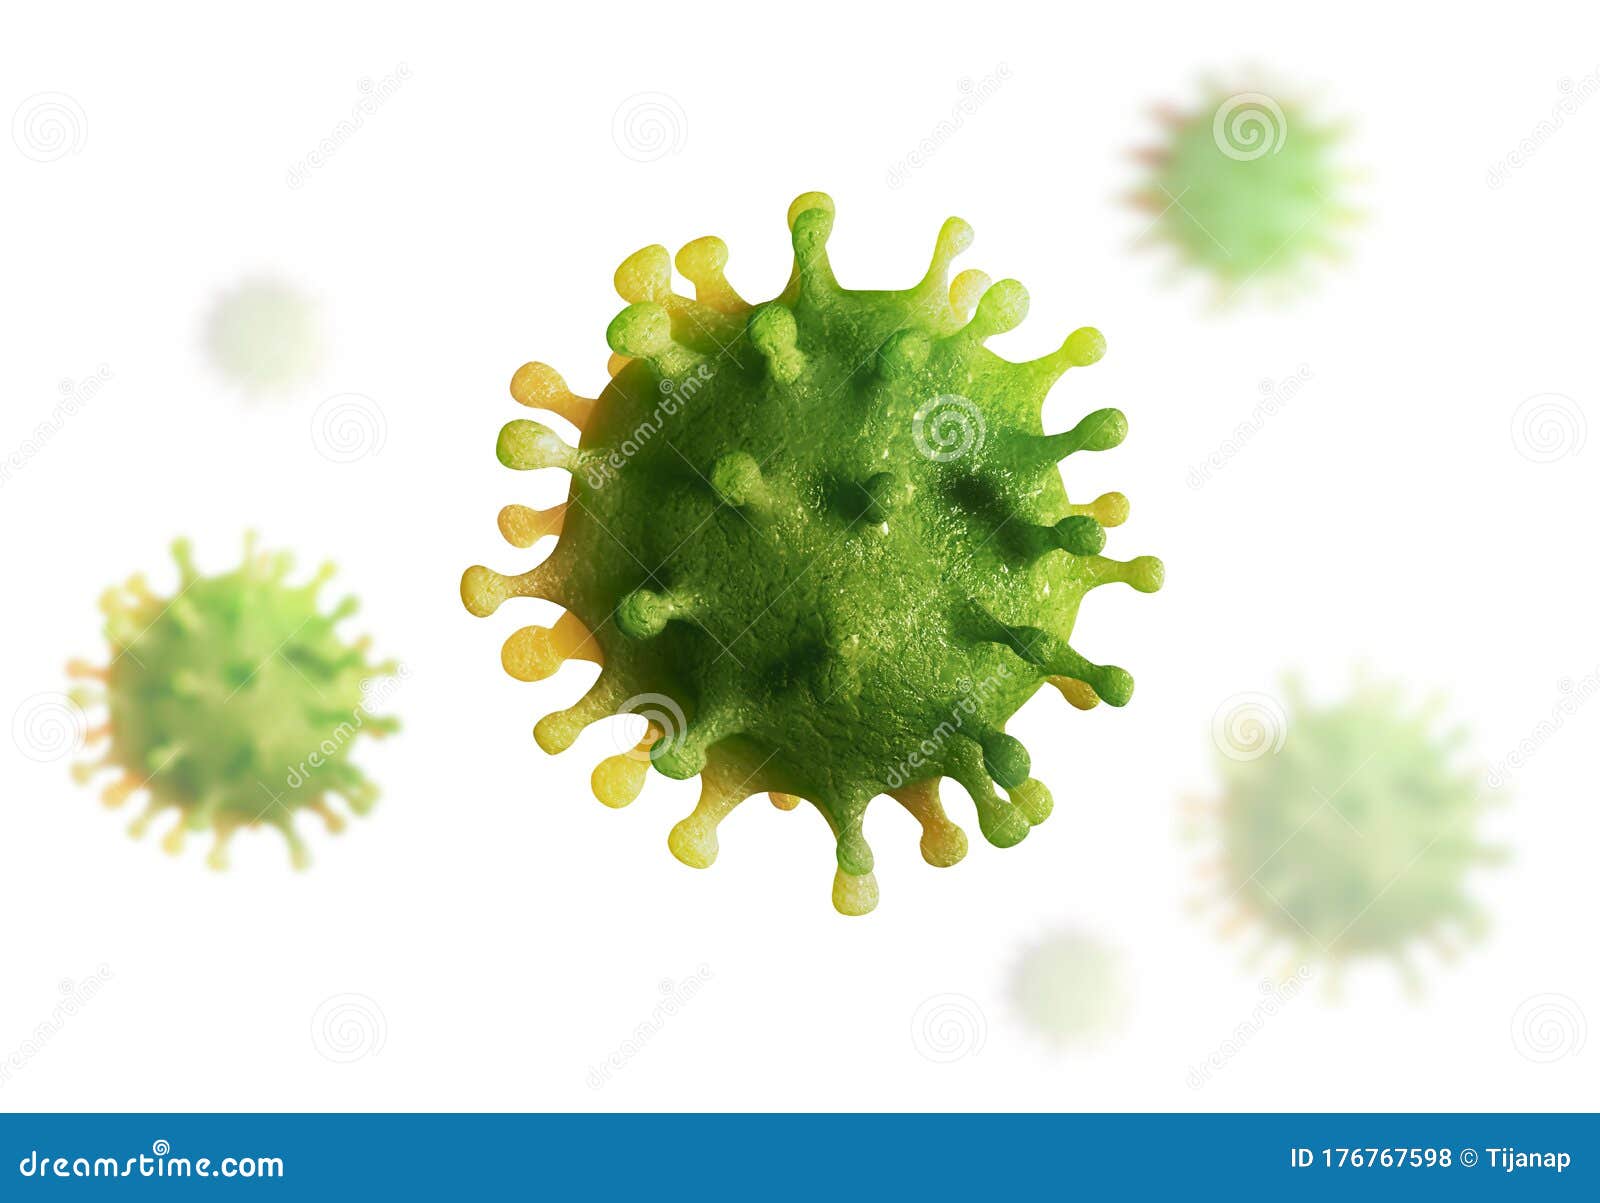 virus 3d render, coronavirus,  on white background